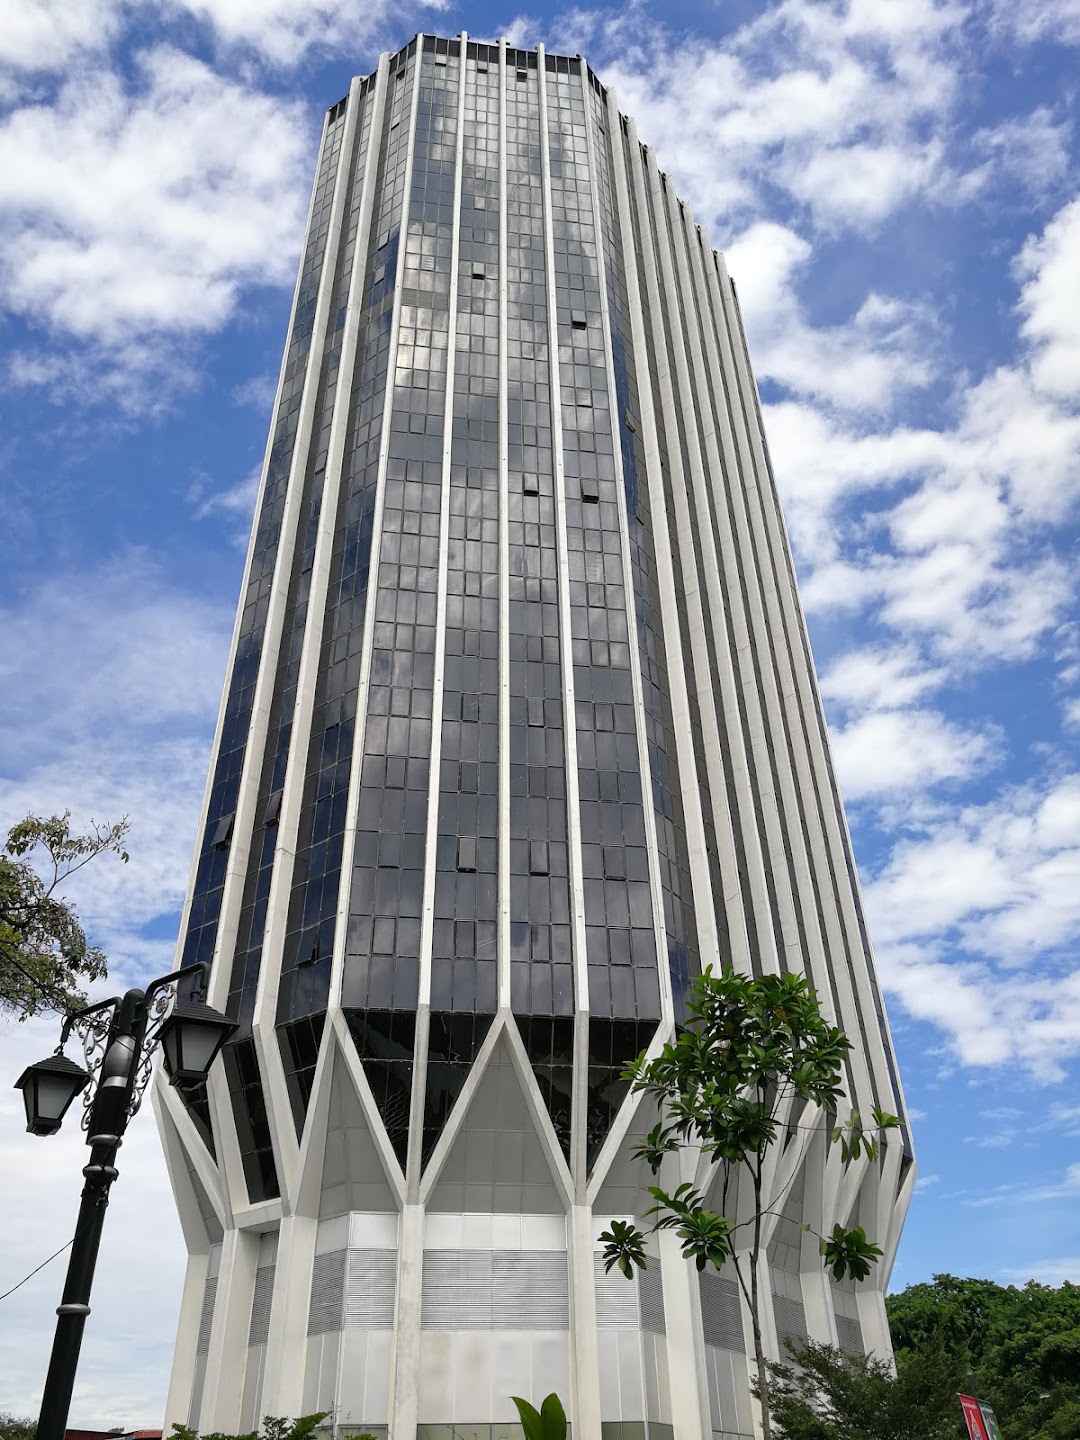 Menara MBPJ - Majlis Bandaraya Petaling Jaya (Bandar Baru PJ)